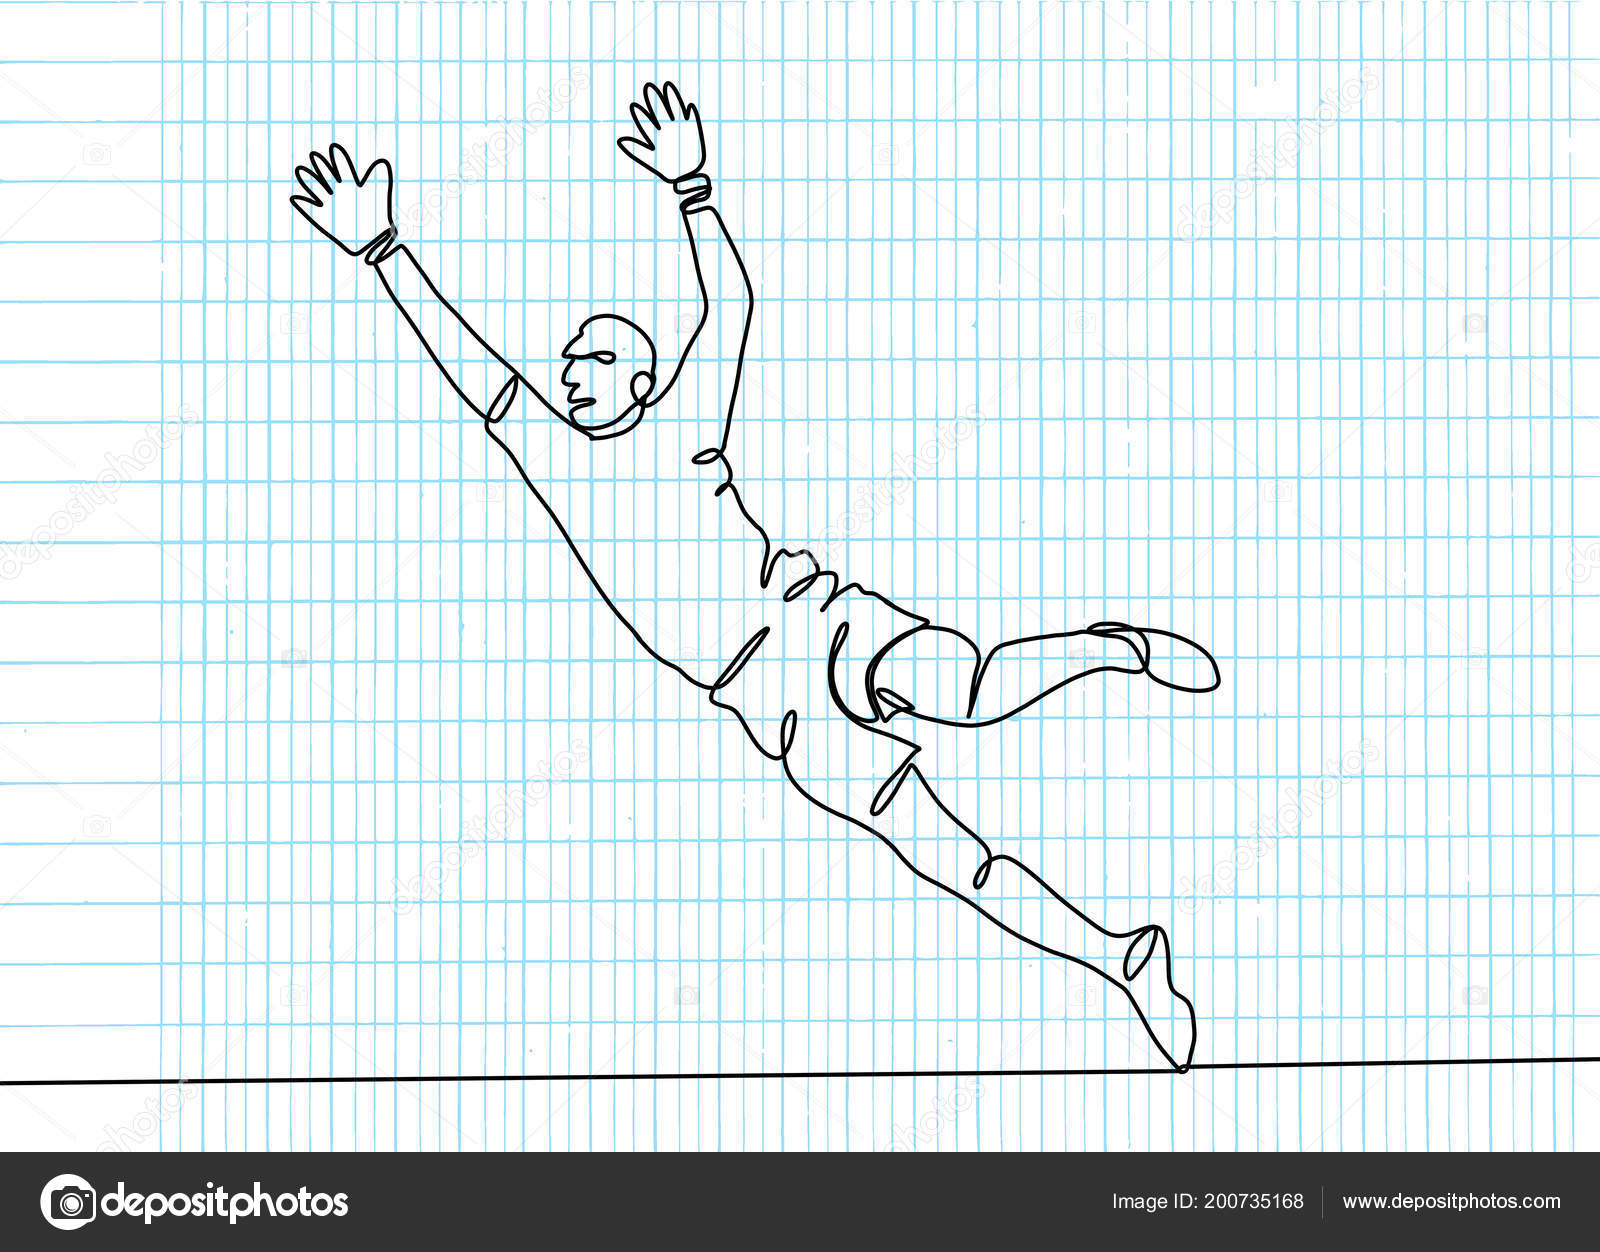 Desenho de linha contínua em pessoas jogando futebol